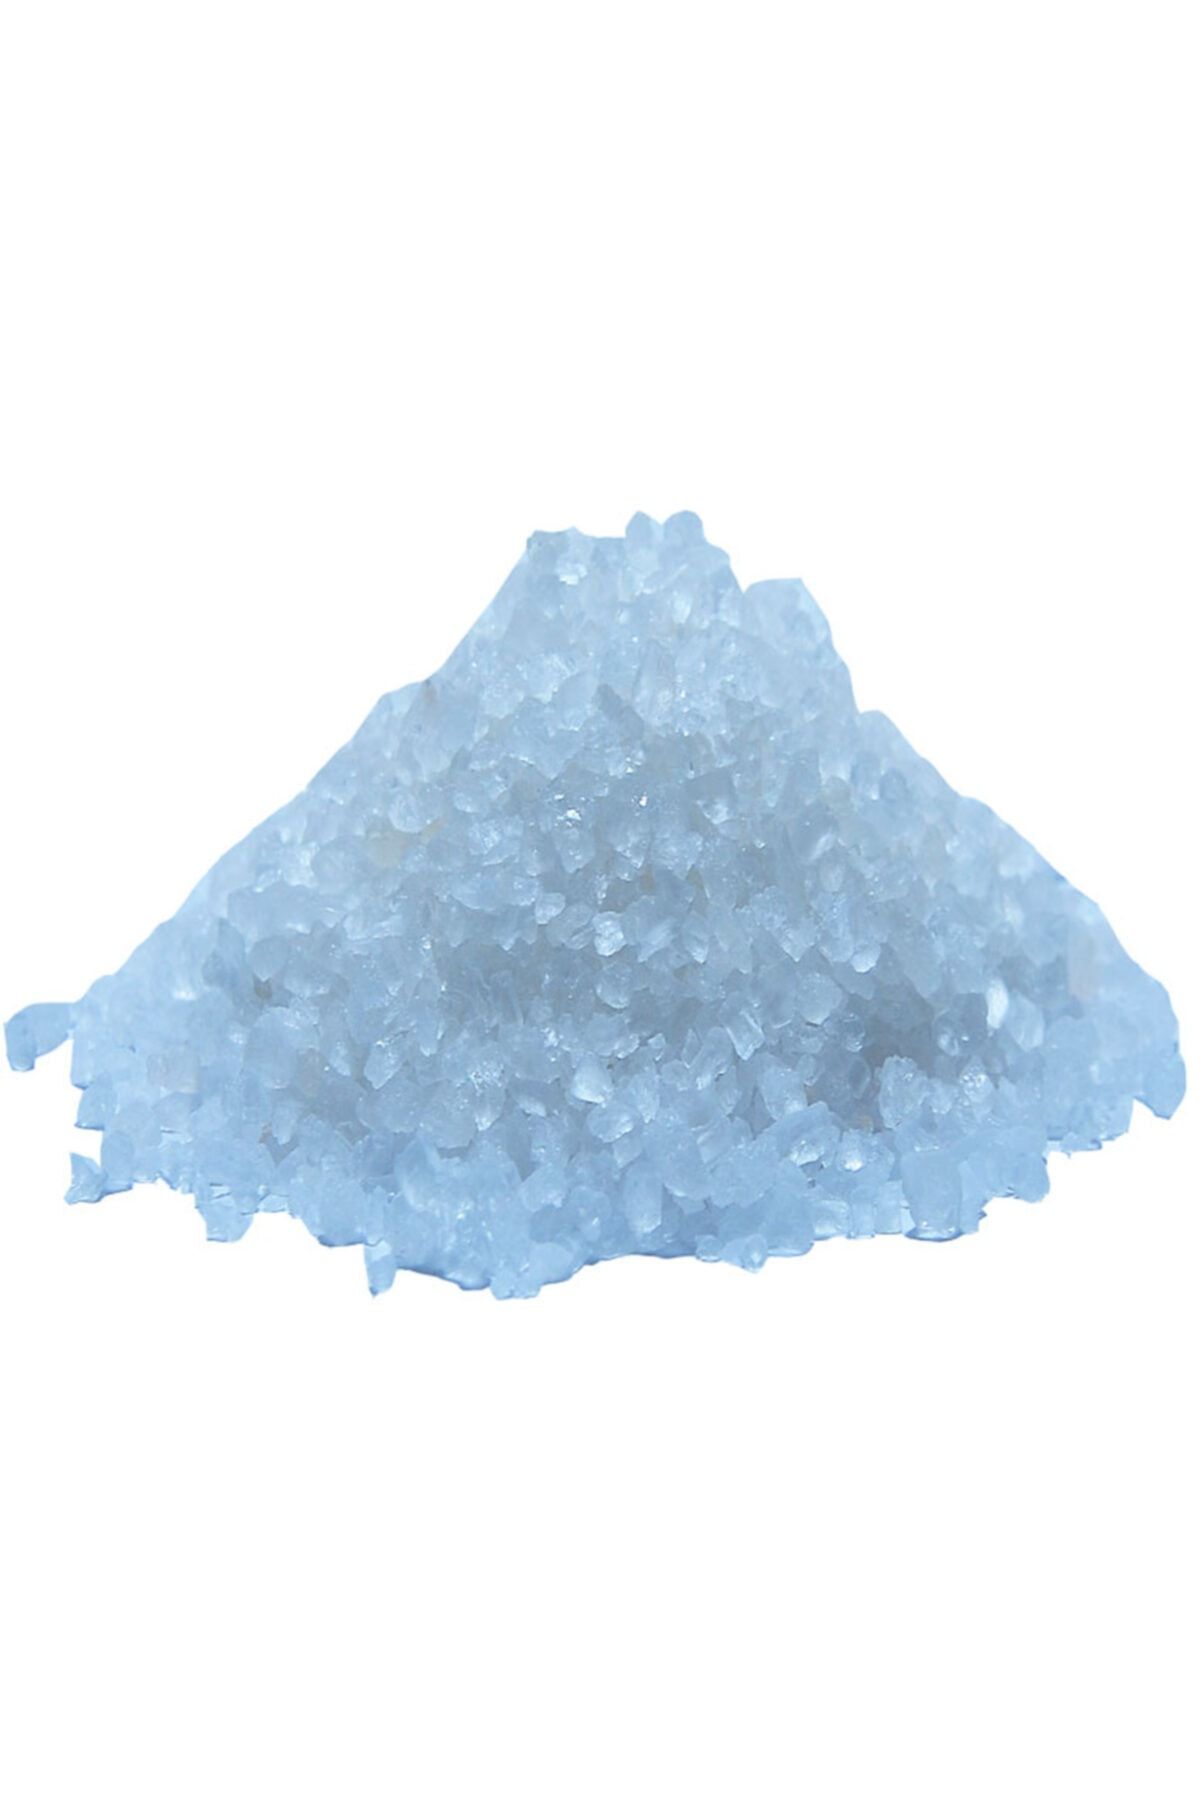 LokmanAVM Himalaya Kristal Kaya Tuzu Çakıl Beyaz 250 Gr